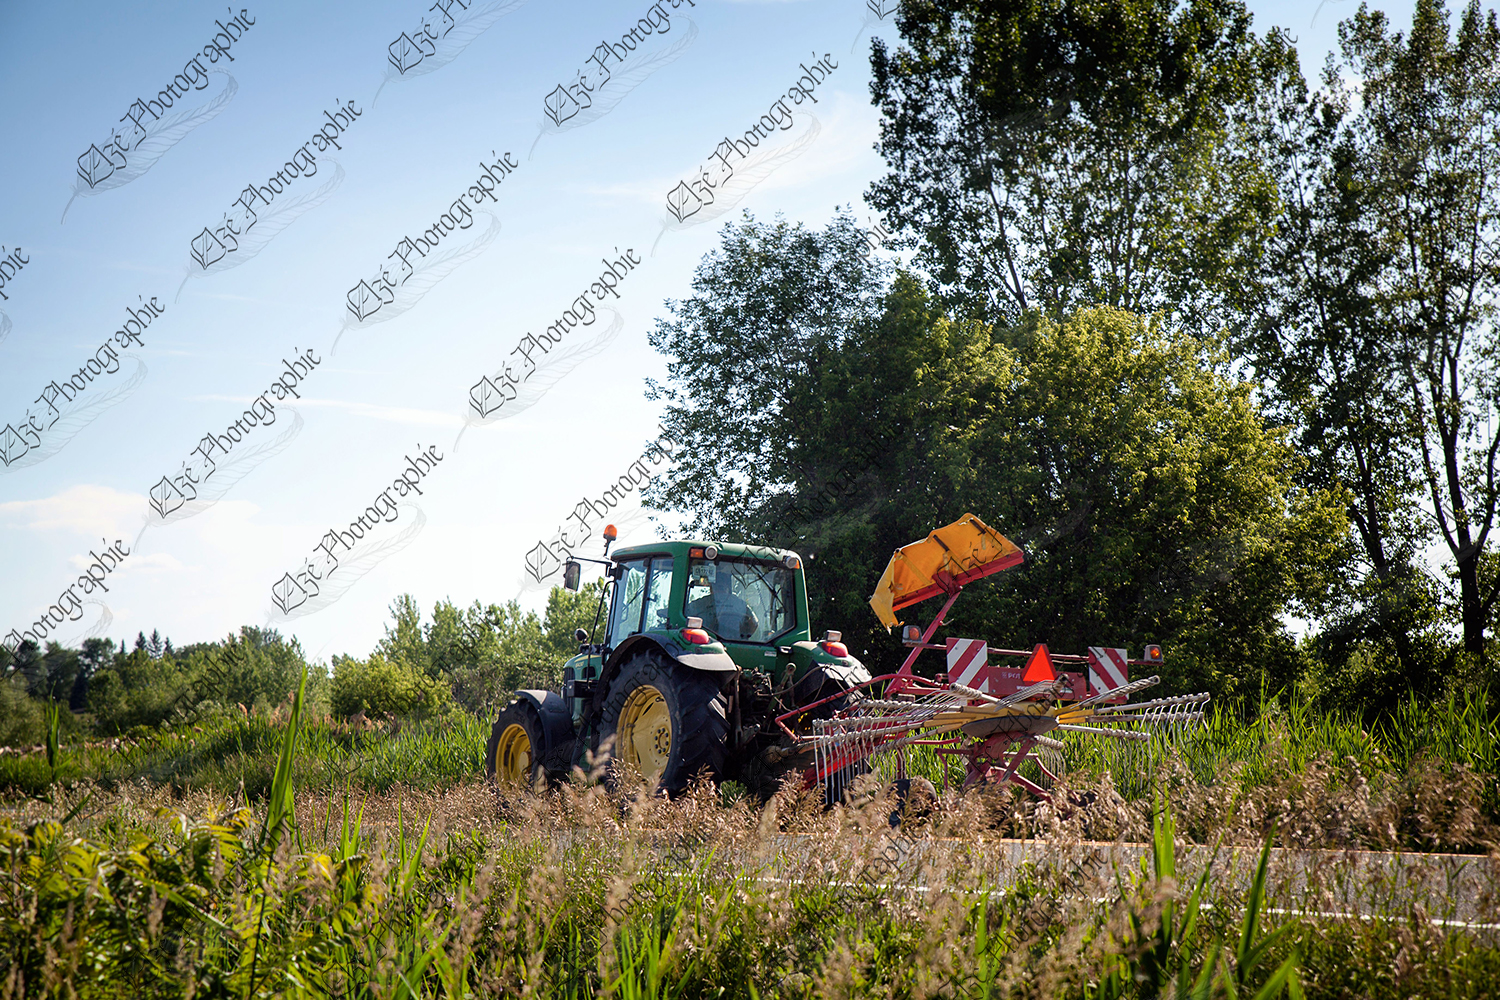 elze_photo_9342_tracteur_johndeere_faneur_tractor_summer